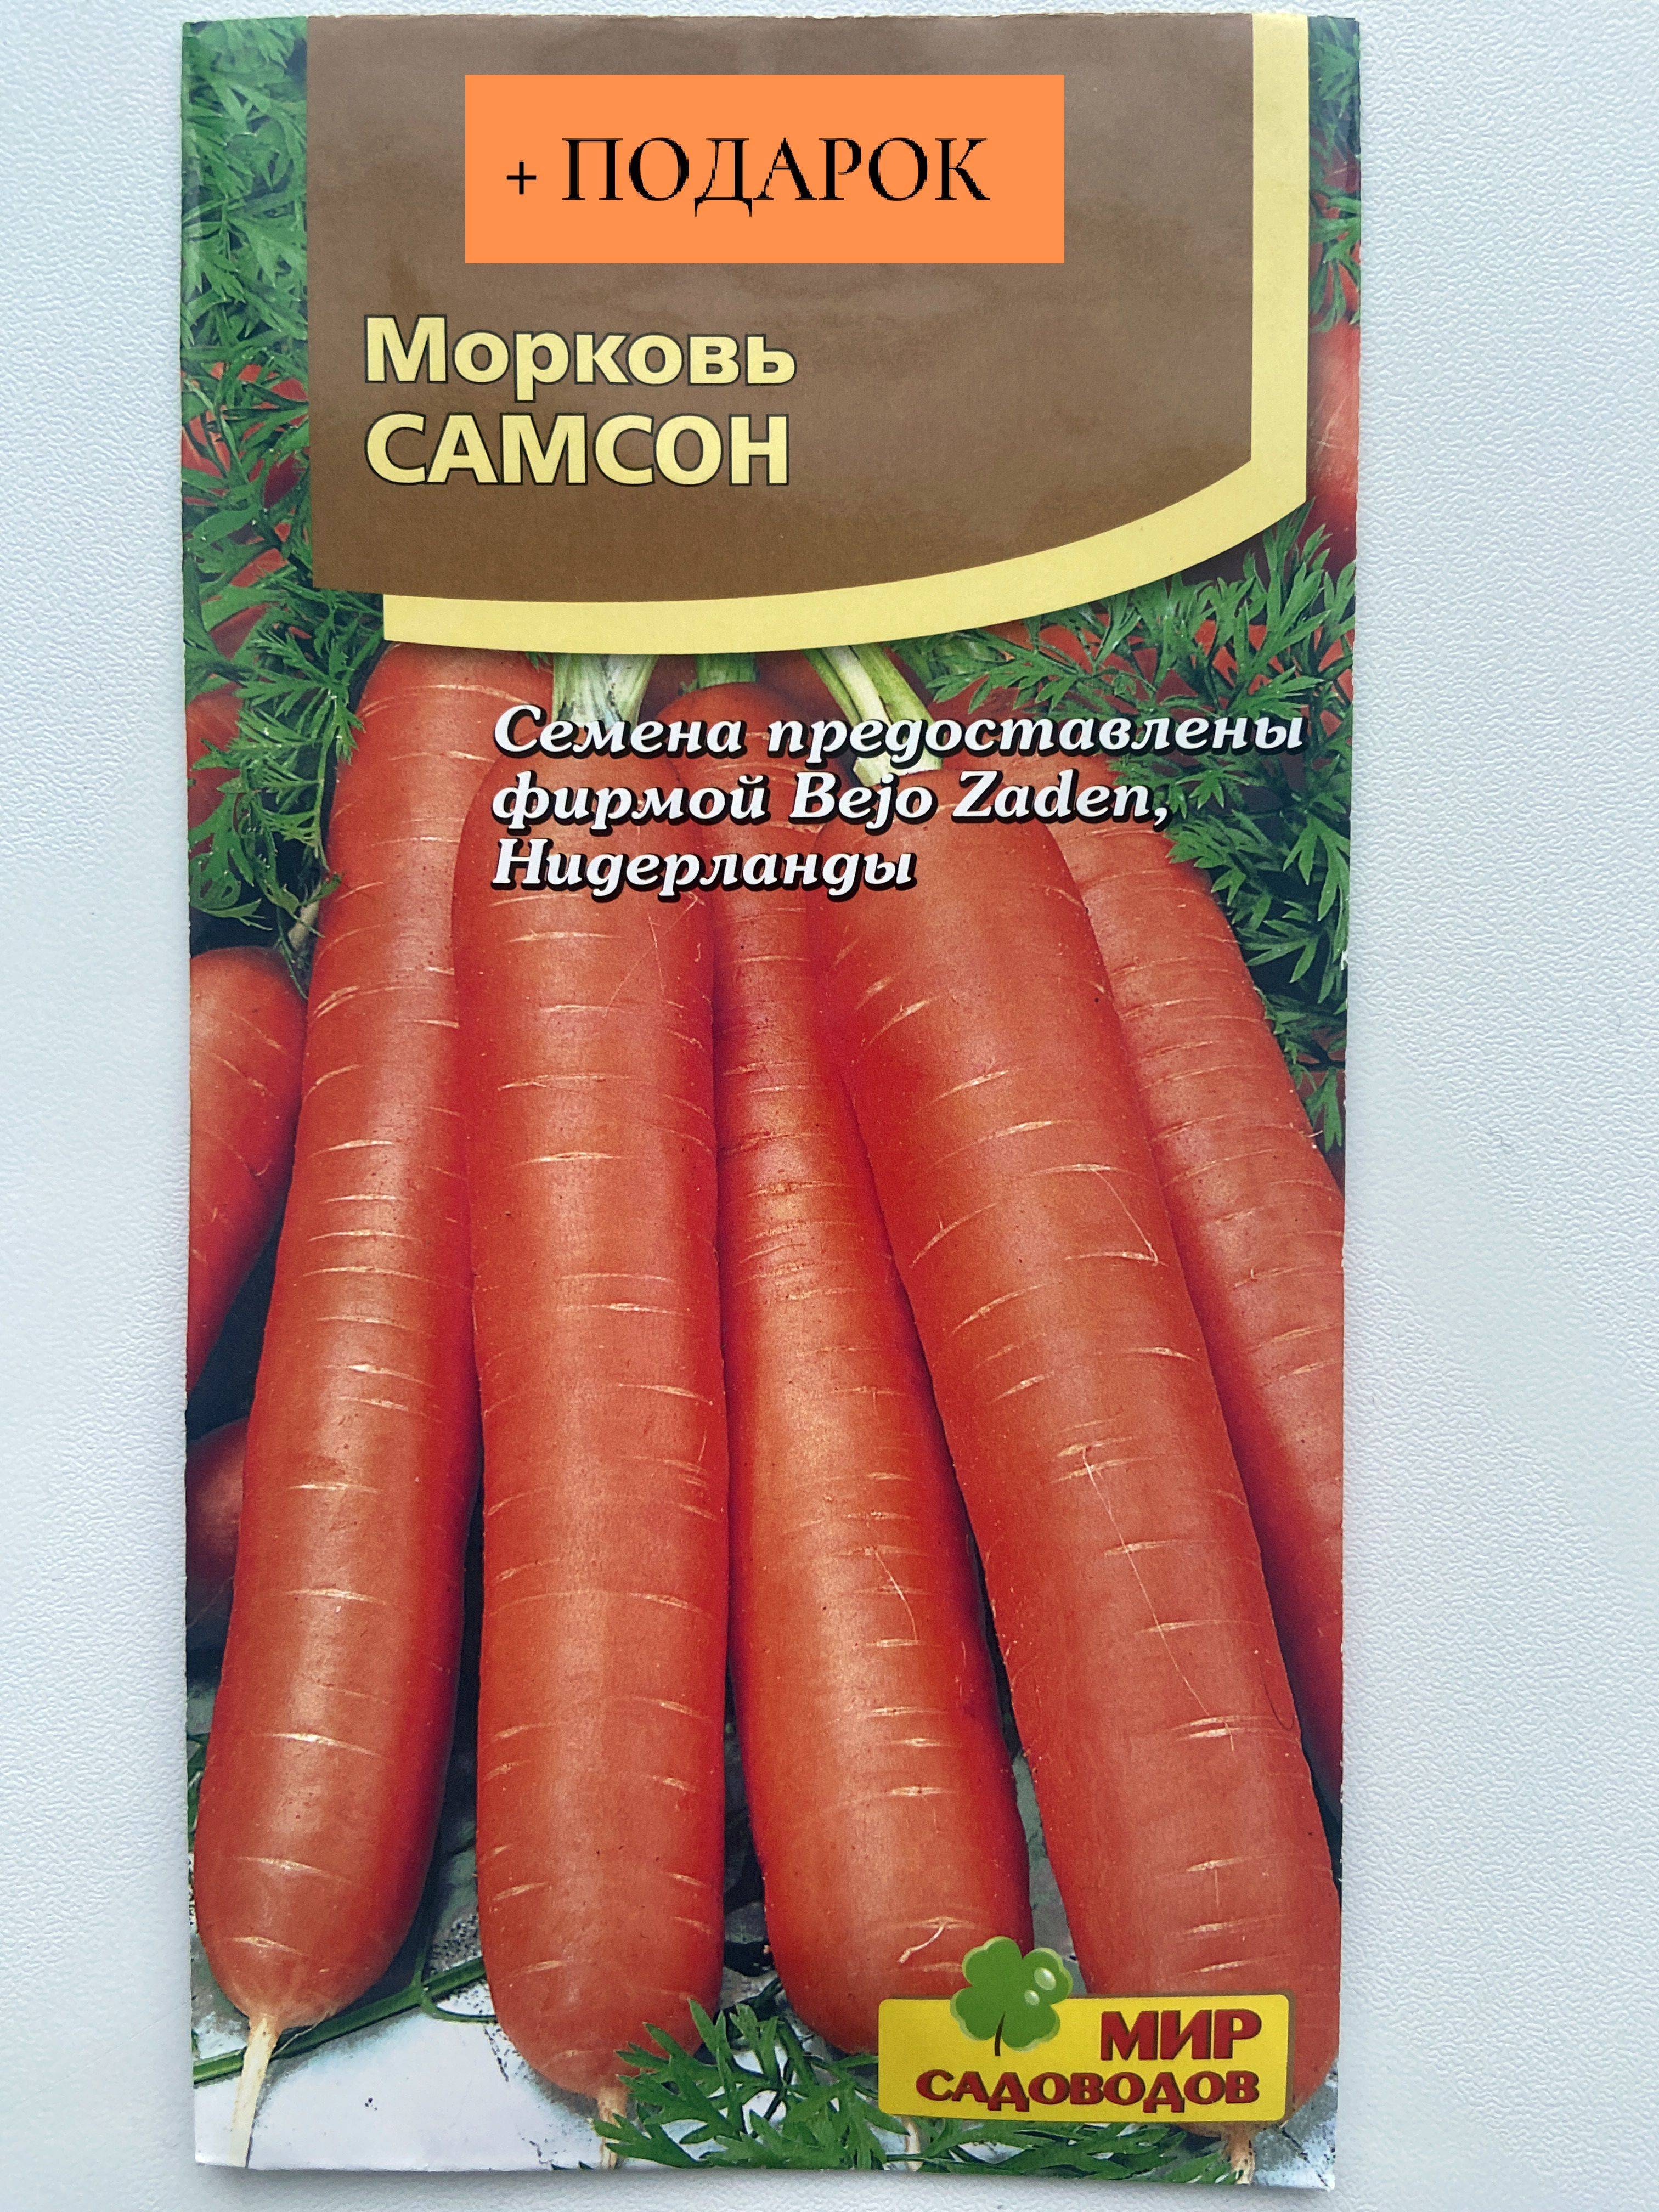 Знаменитая морковь "самсон" - описание сорта, фото, отзывы